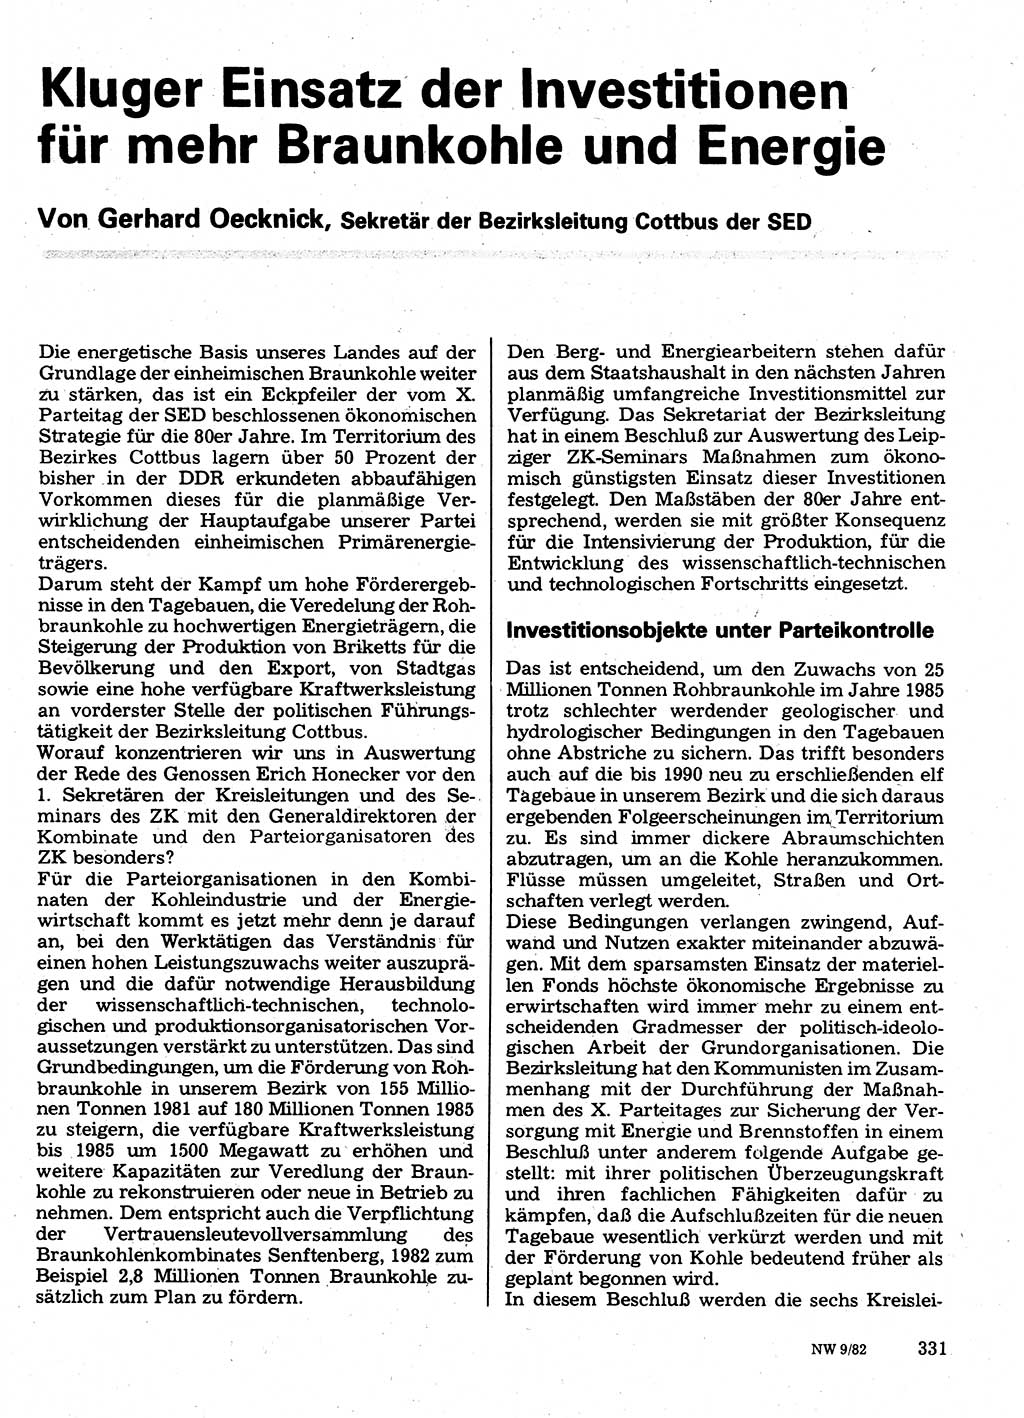 Neuer Weg (NW), Organ des Zentralkomitees (ZK) der SED (Sozialistische Einheitspartei Deutschlands) für Fragen des Parteilebens, 37. Jahrgang [Deutsche Demokratische Republik (DDR)] 1982, Seite 331 (NW ZK SED DDR 1982, S. 331)